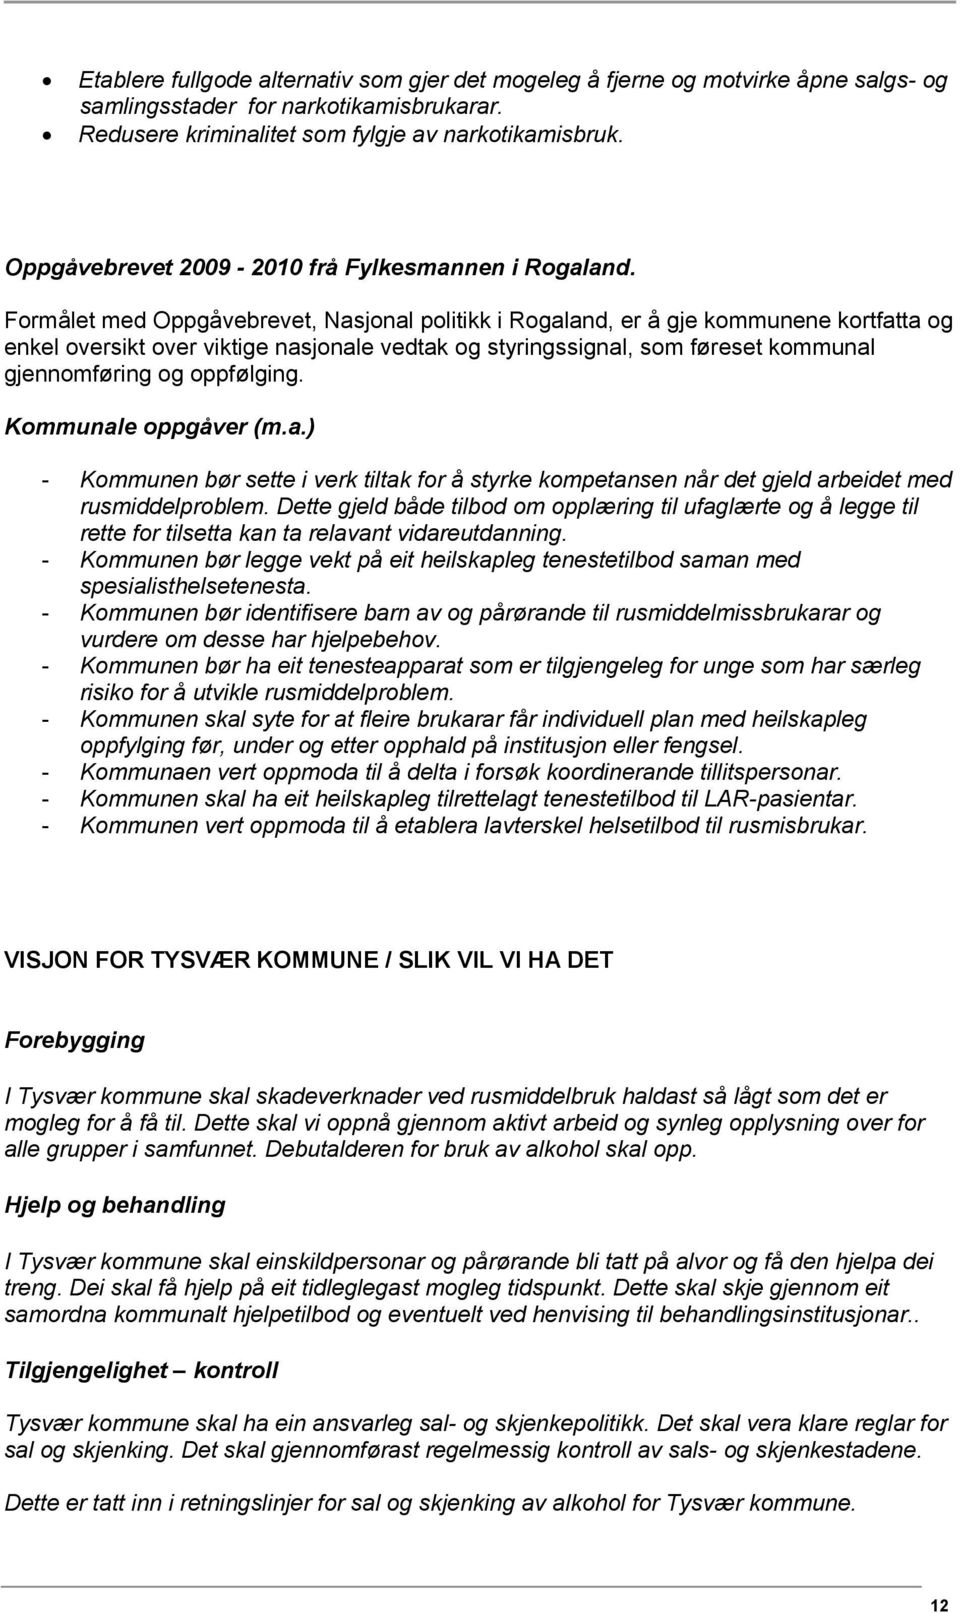 Formålet med Oppgåvebrevet, Nasjonal politikk i Rogaland, er å gje kommunene kortfatta og enkel oversikt over viktige nasjonale vedtak og styringssignal, som føreset kommunal gjennomføring og